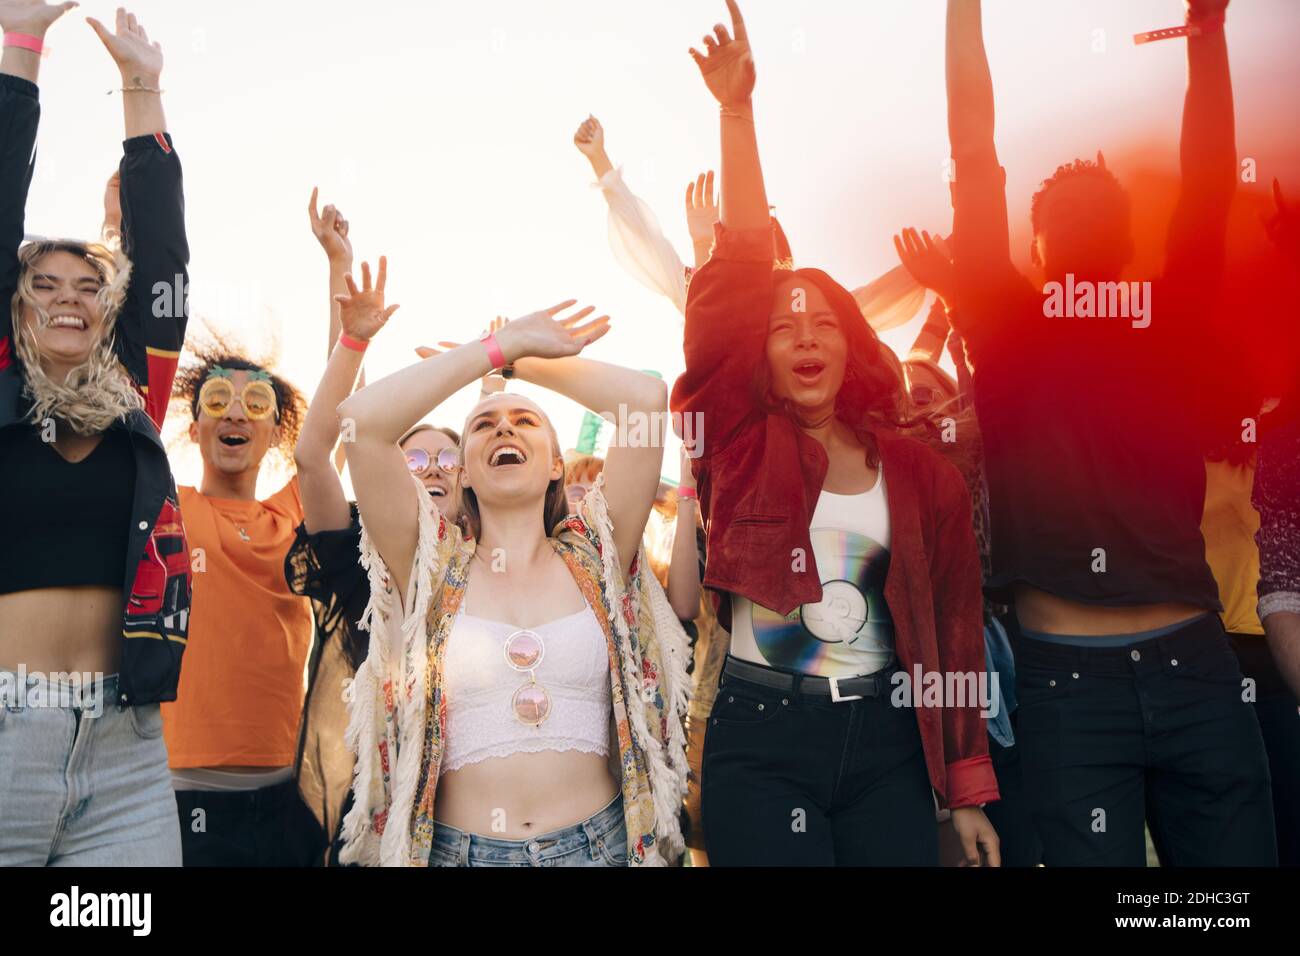 Alegres fans gritando con los brazos levantados contra el cielo durante el verano Foto de stock